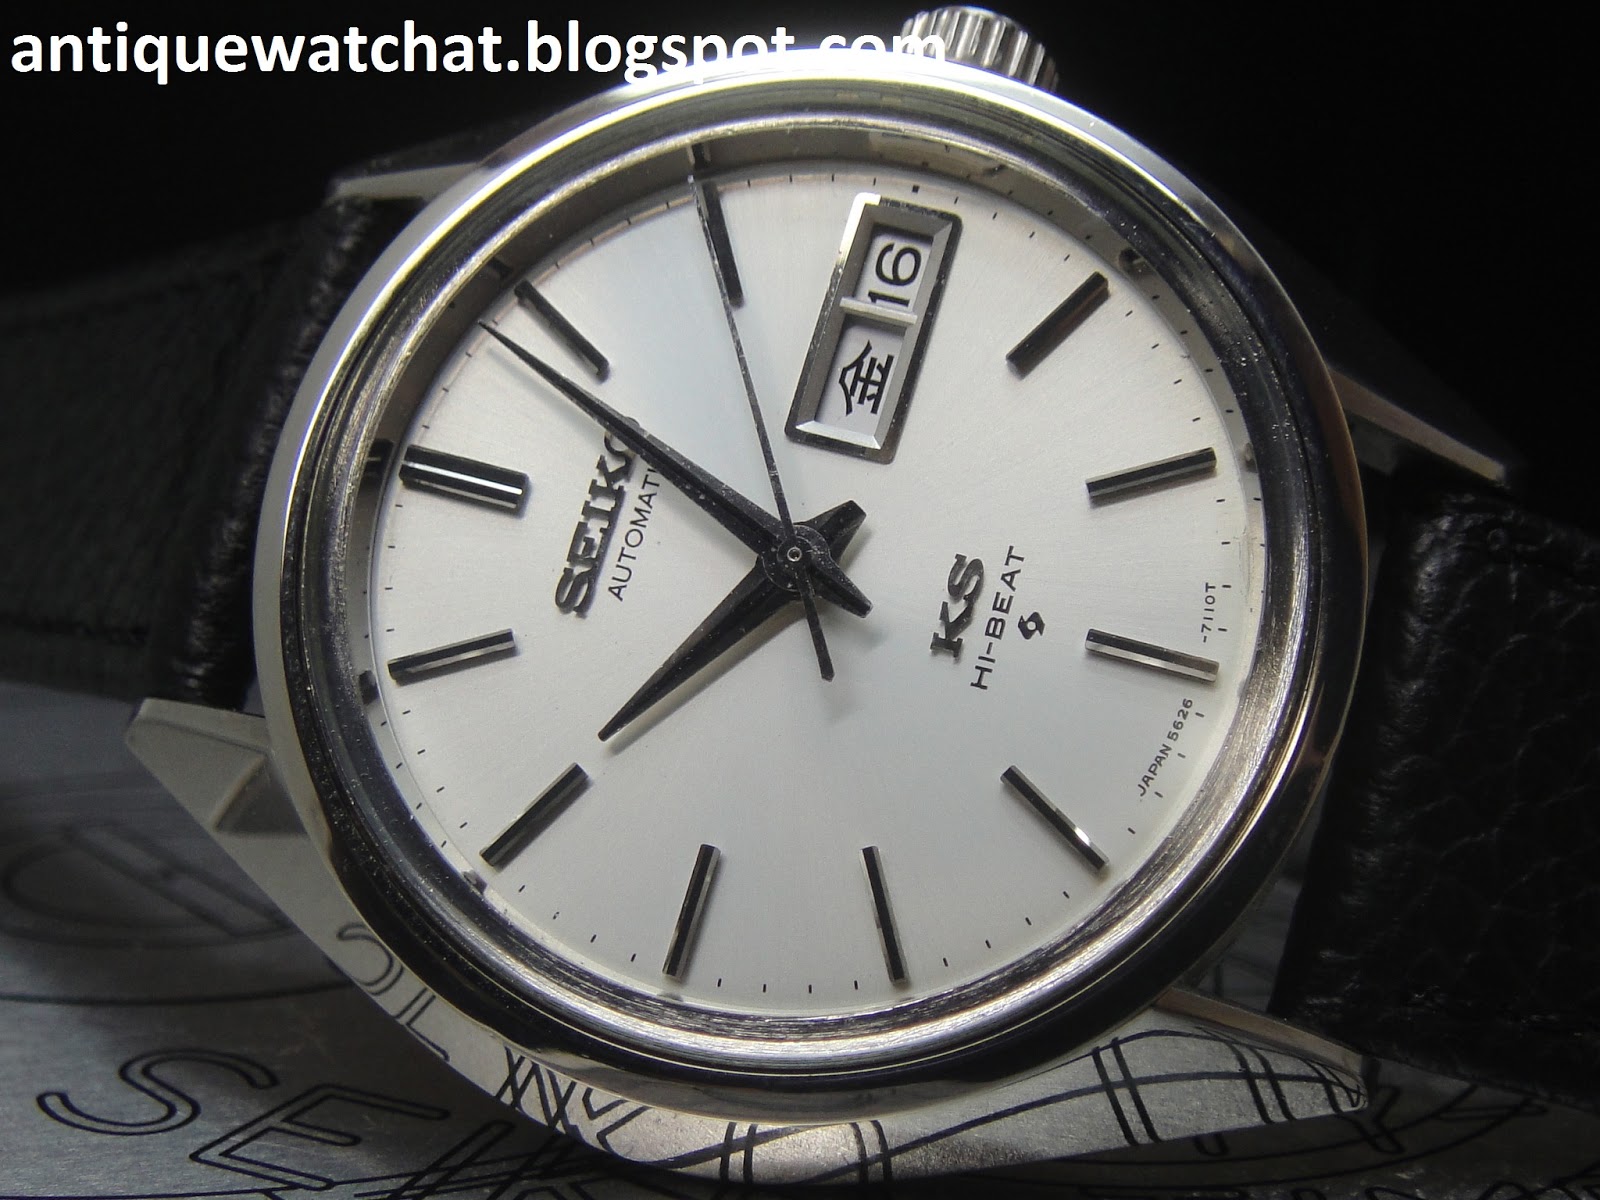 Antique Watch Bar: KING SEIKO HI-BEAT 5626-7110 KS97 (SOLD)